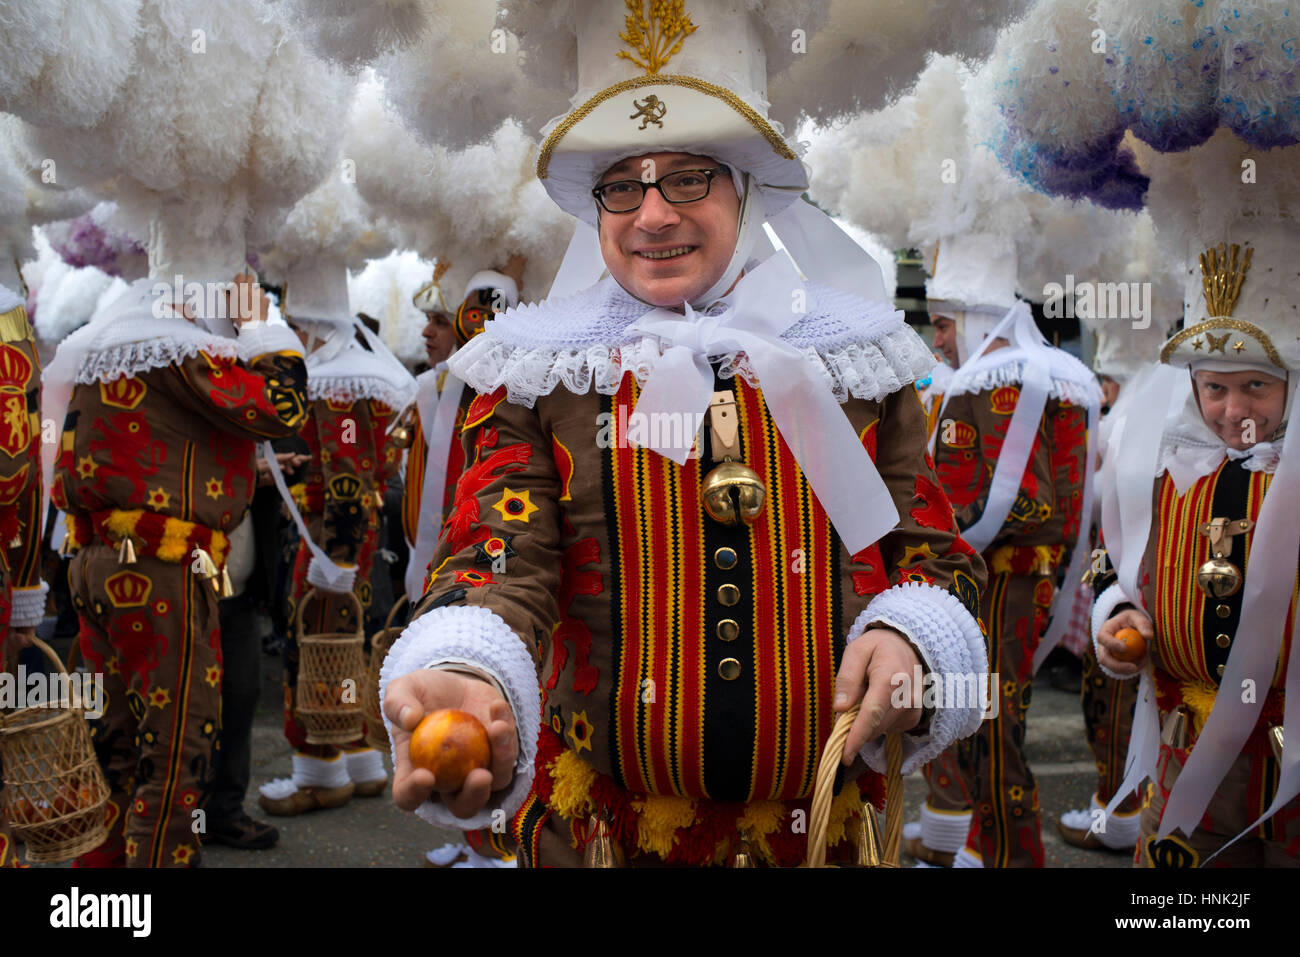 La Belgique, le carnaval de Binche. unesco world heritage festival parade. Belgique, commune française, province de Hainaut, village de Binche. l'carniva Banque D'Images